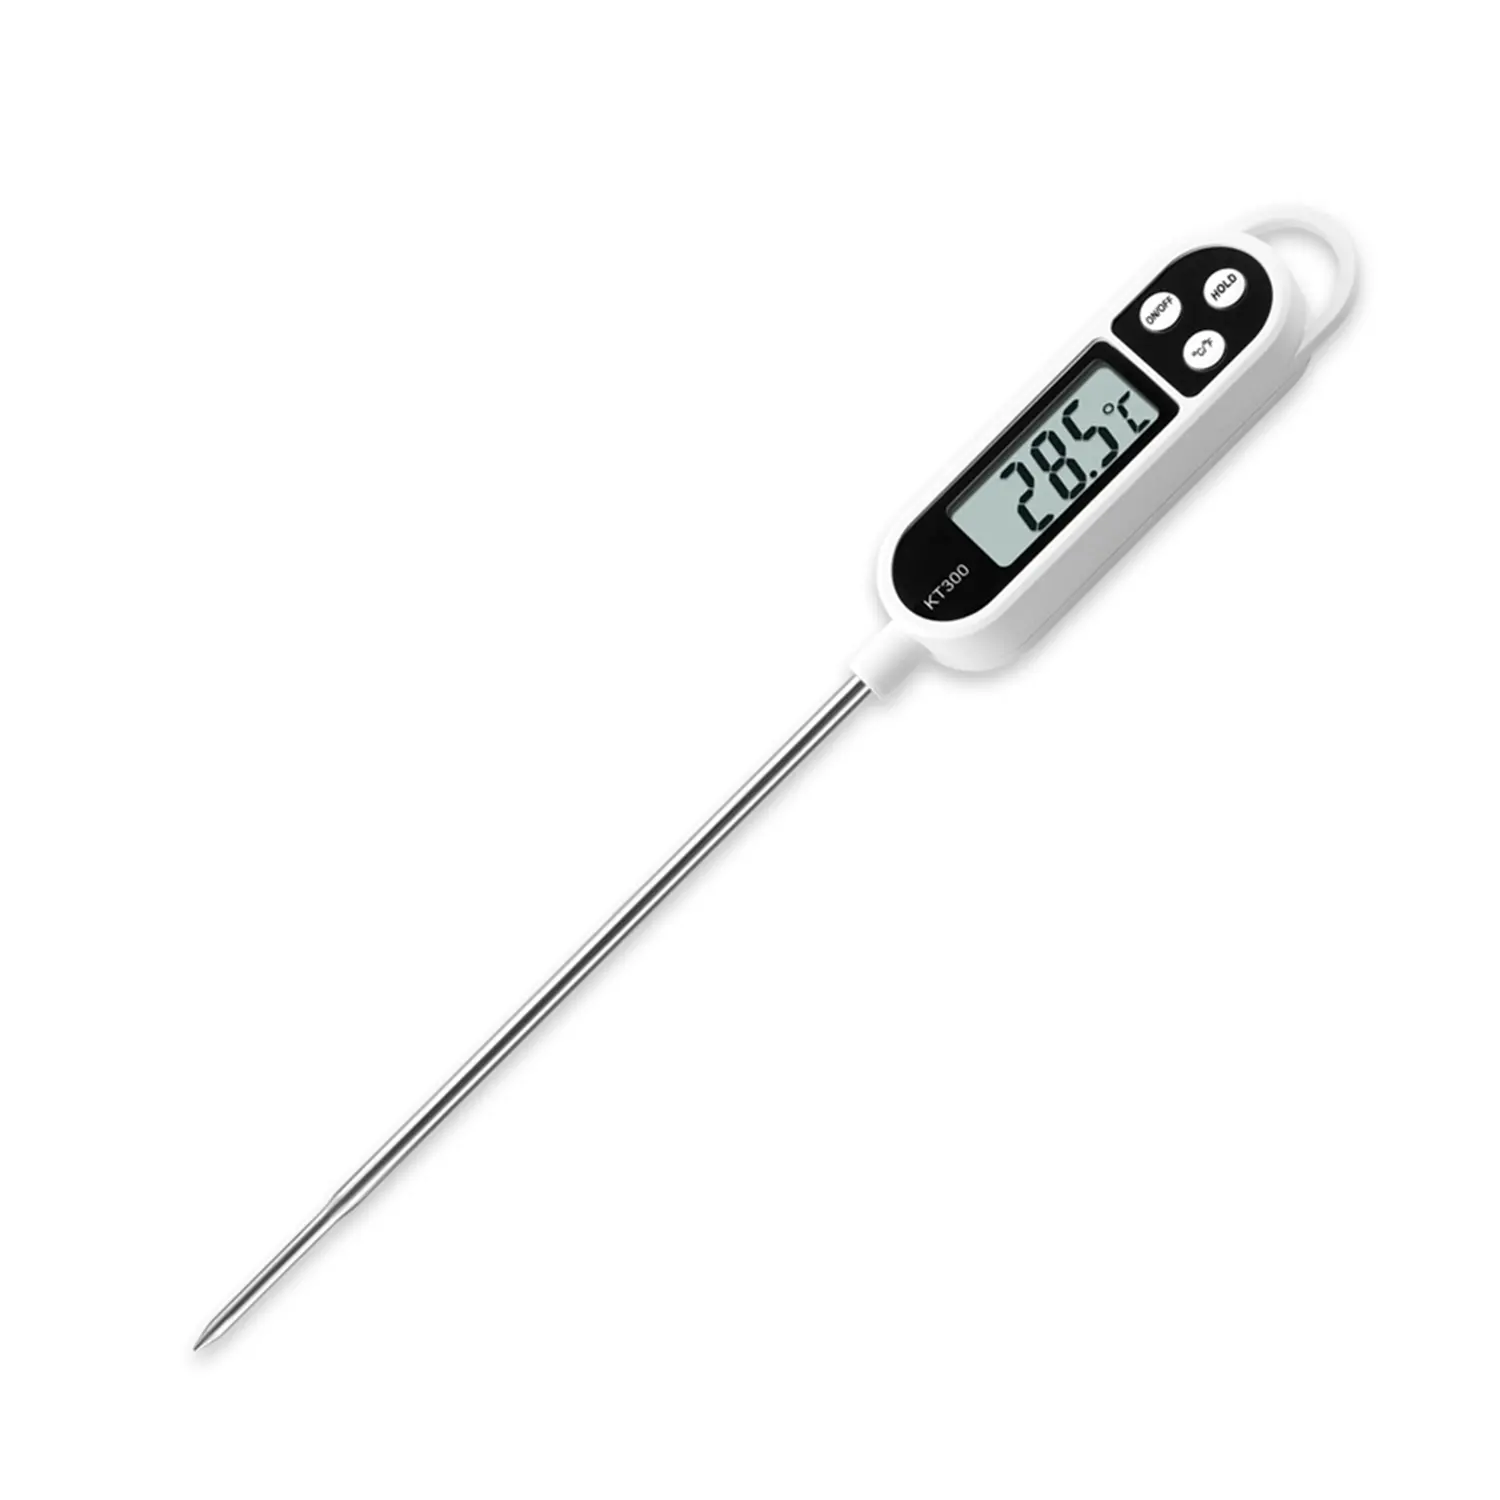 TP-300 termometro per alimenti digitale con real-time di lettura sonda può essere utilizzata per BARBECUE, a base di carne, liquido, temperatura di cottura di misura